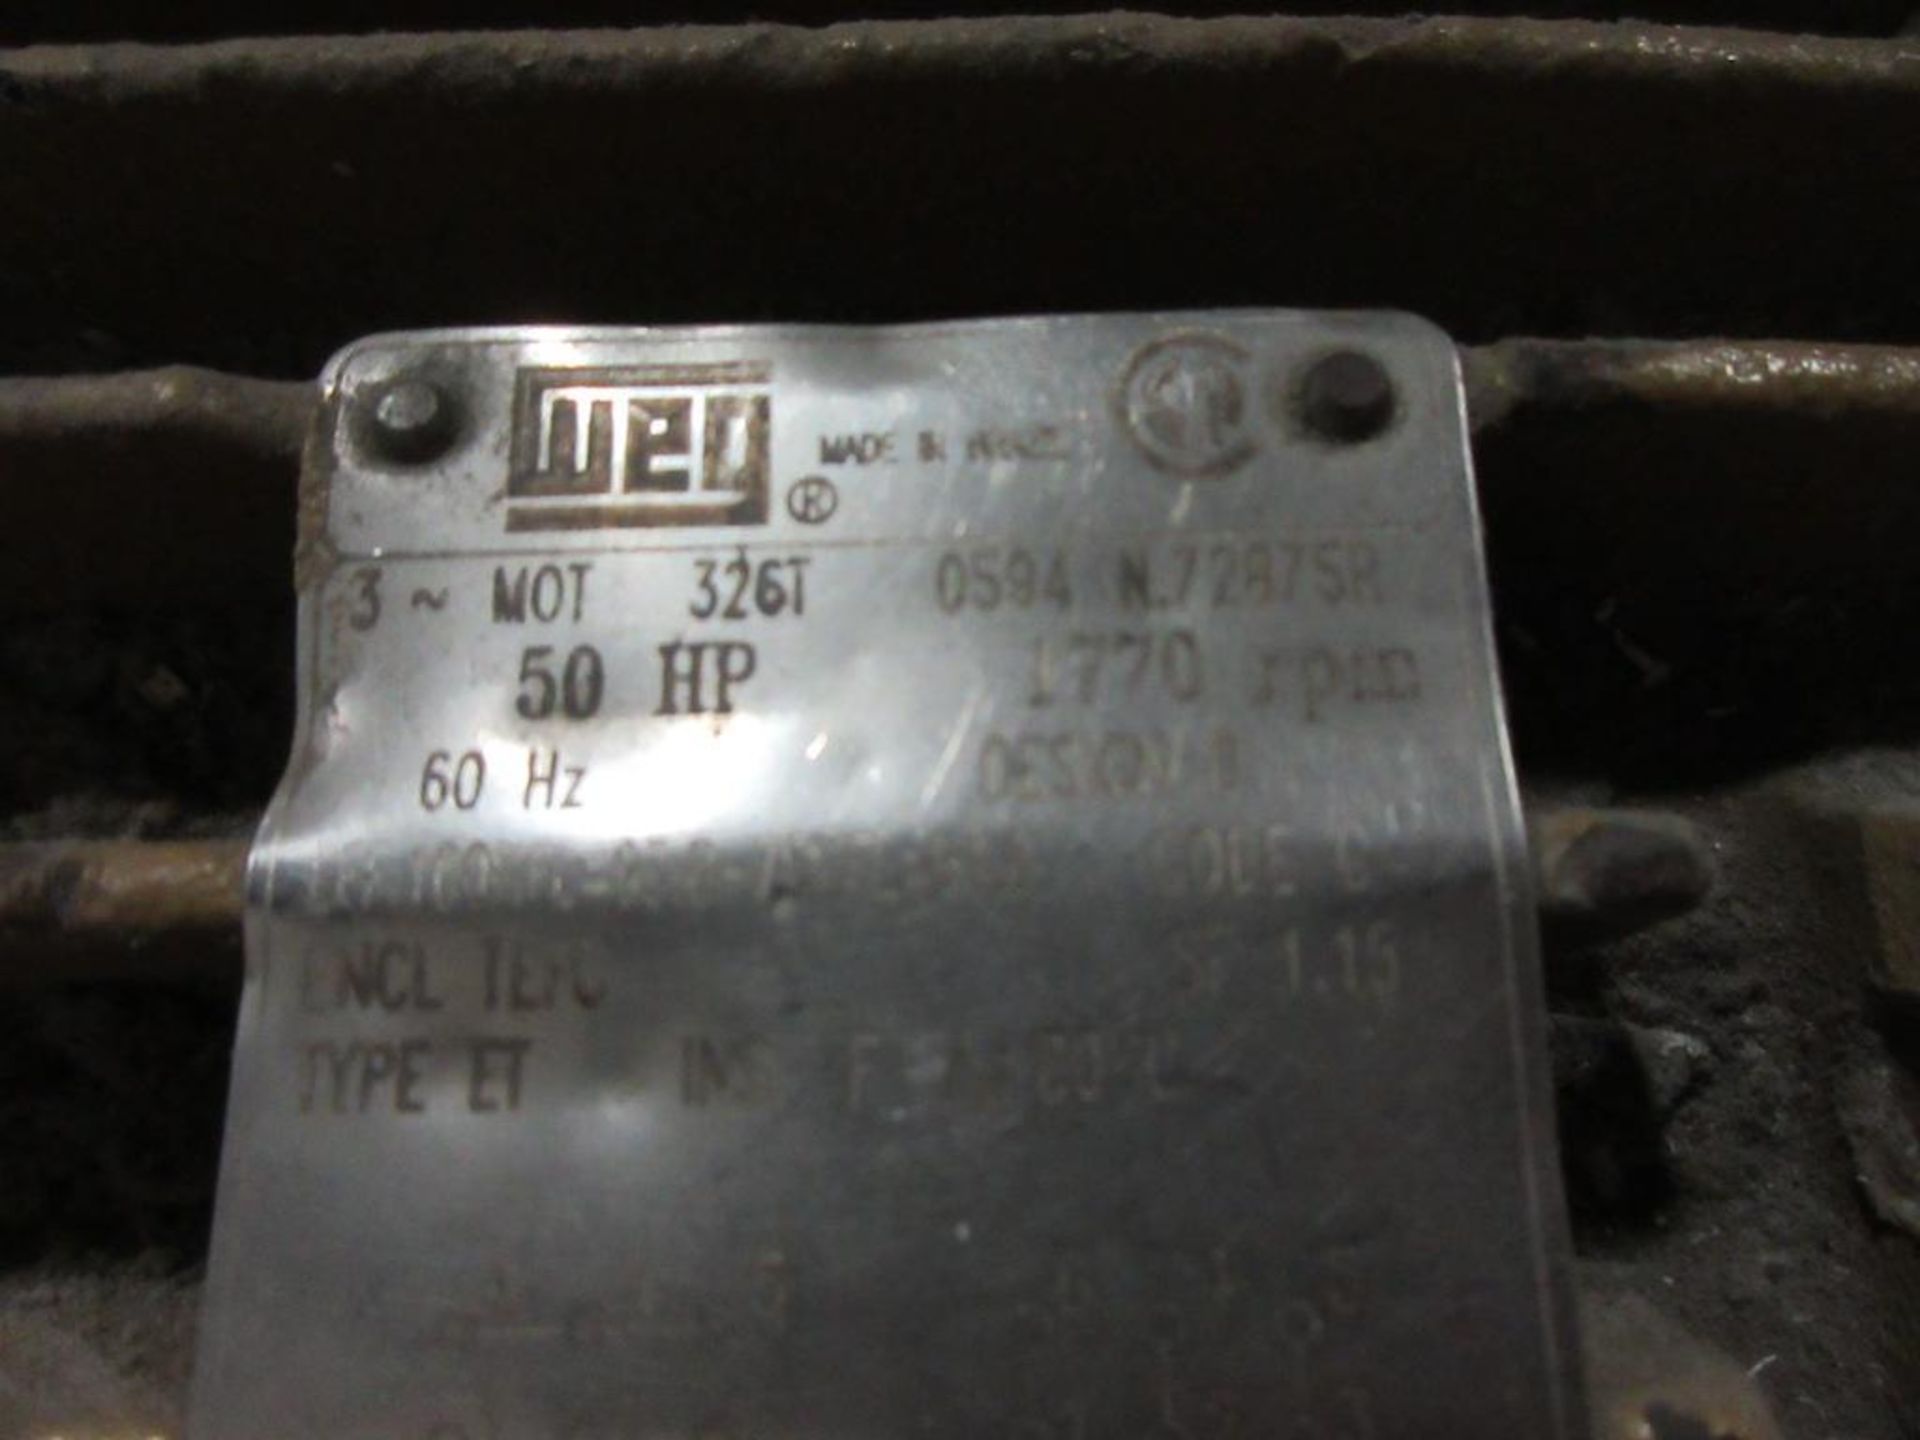 Royal 50 HP Grinder, model 281,22" x 12", sn 575601 - Image 3 of 5